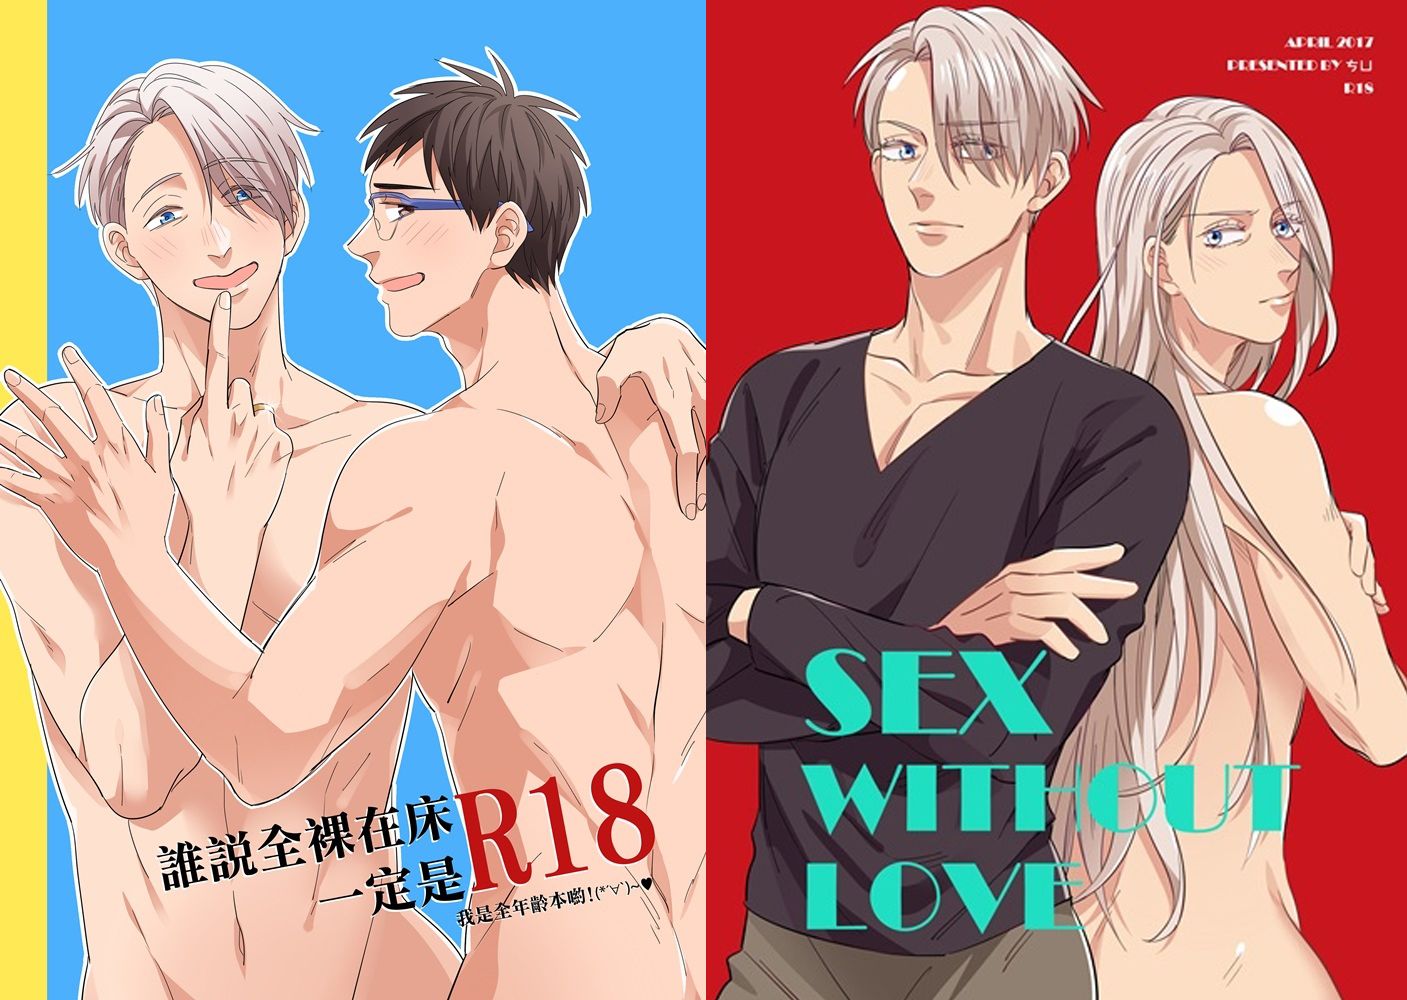 （清倉）YURI!!! on ICE 漫畫本《誰說全裸在床一定是R18》《SEX WITHOUT LOVE》